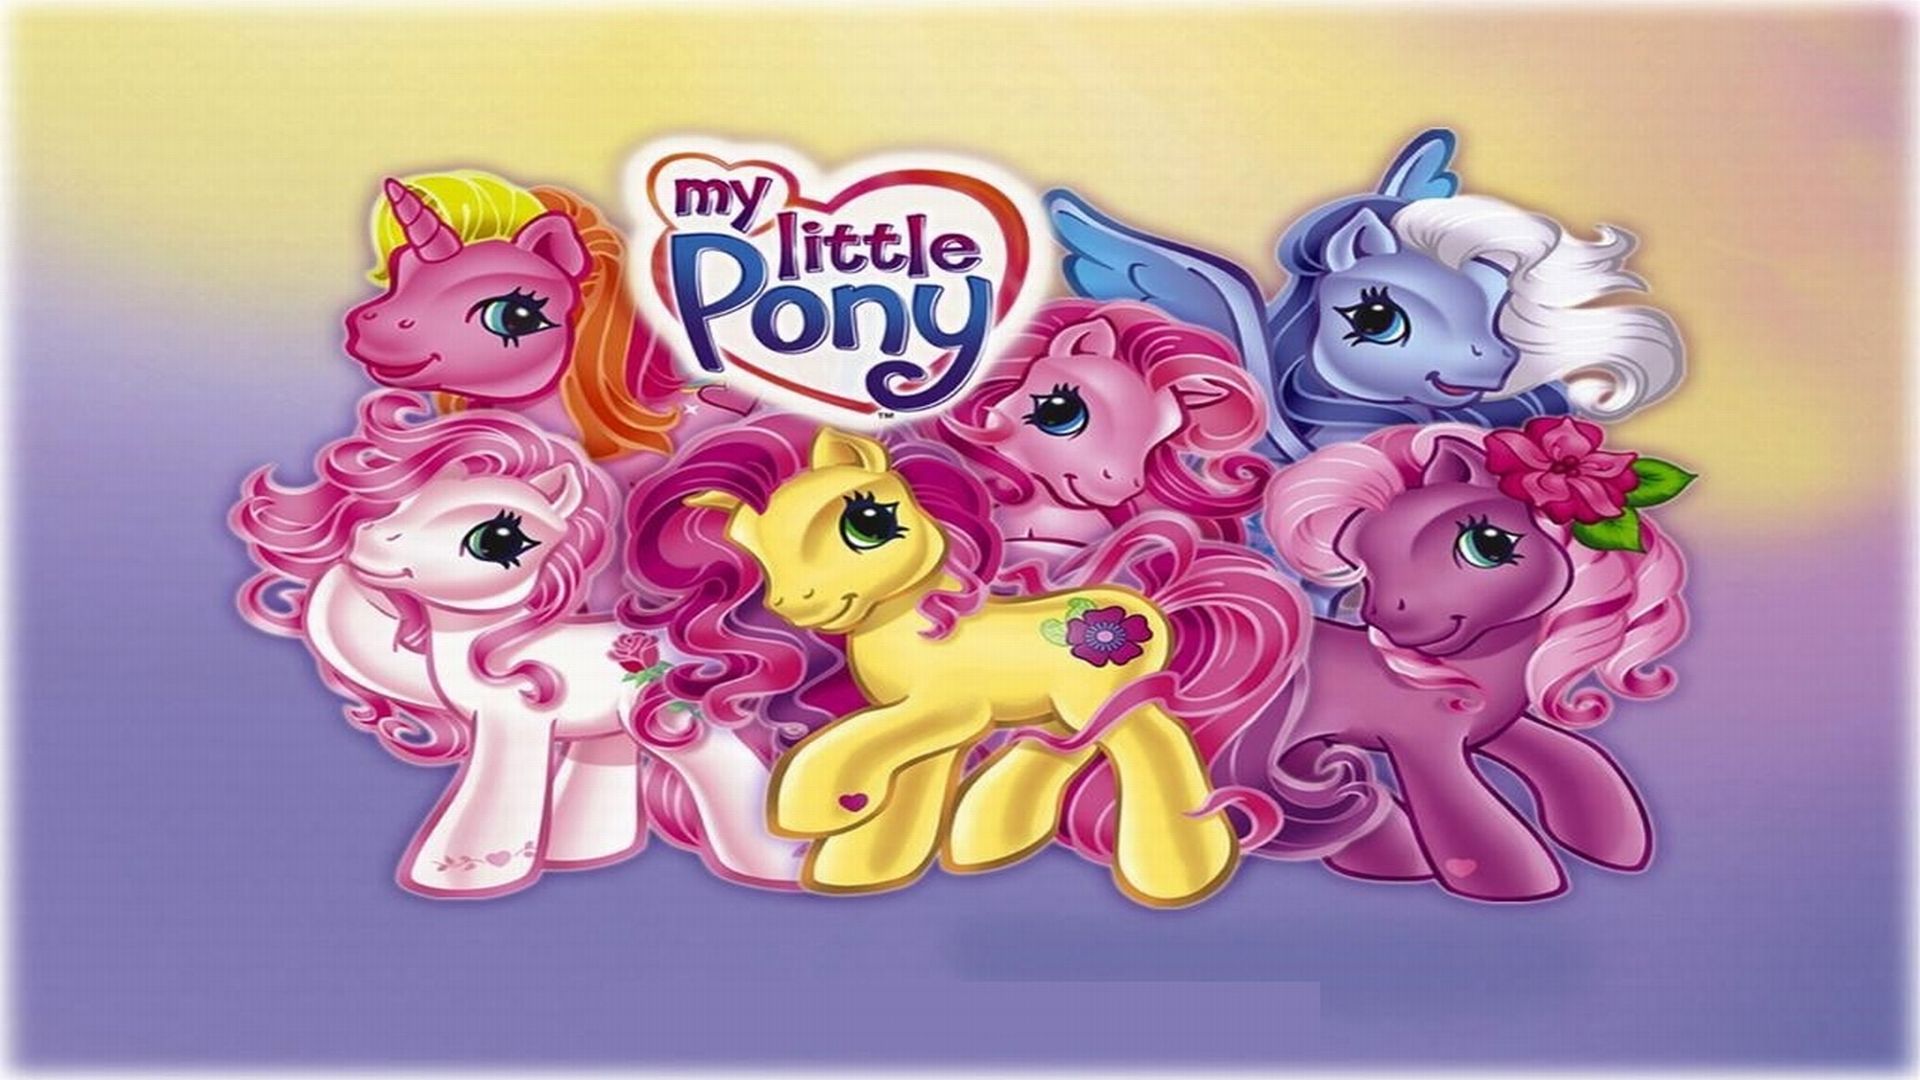 Little little my friends 2. My little Pony 1984. My little Pony 1984 1987.